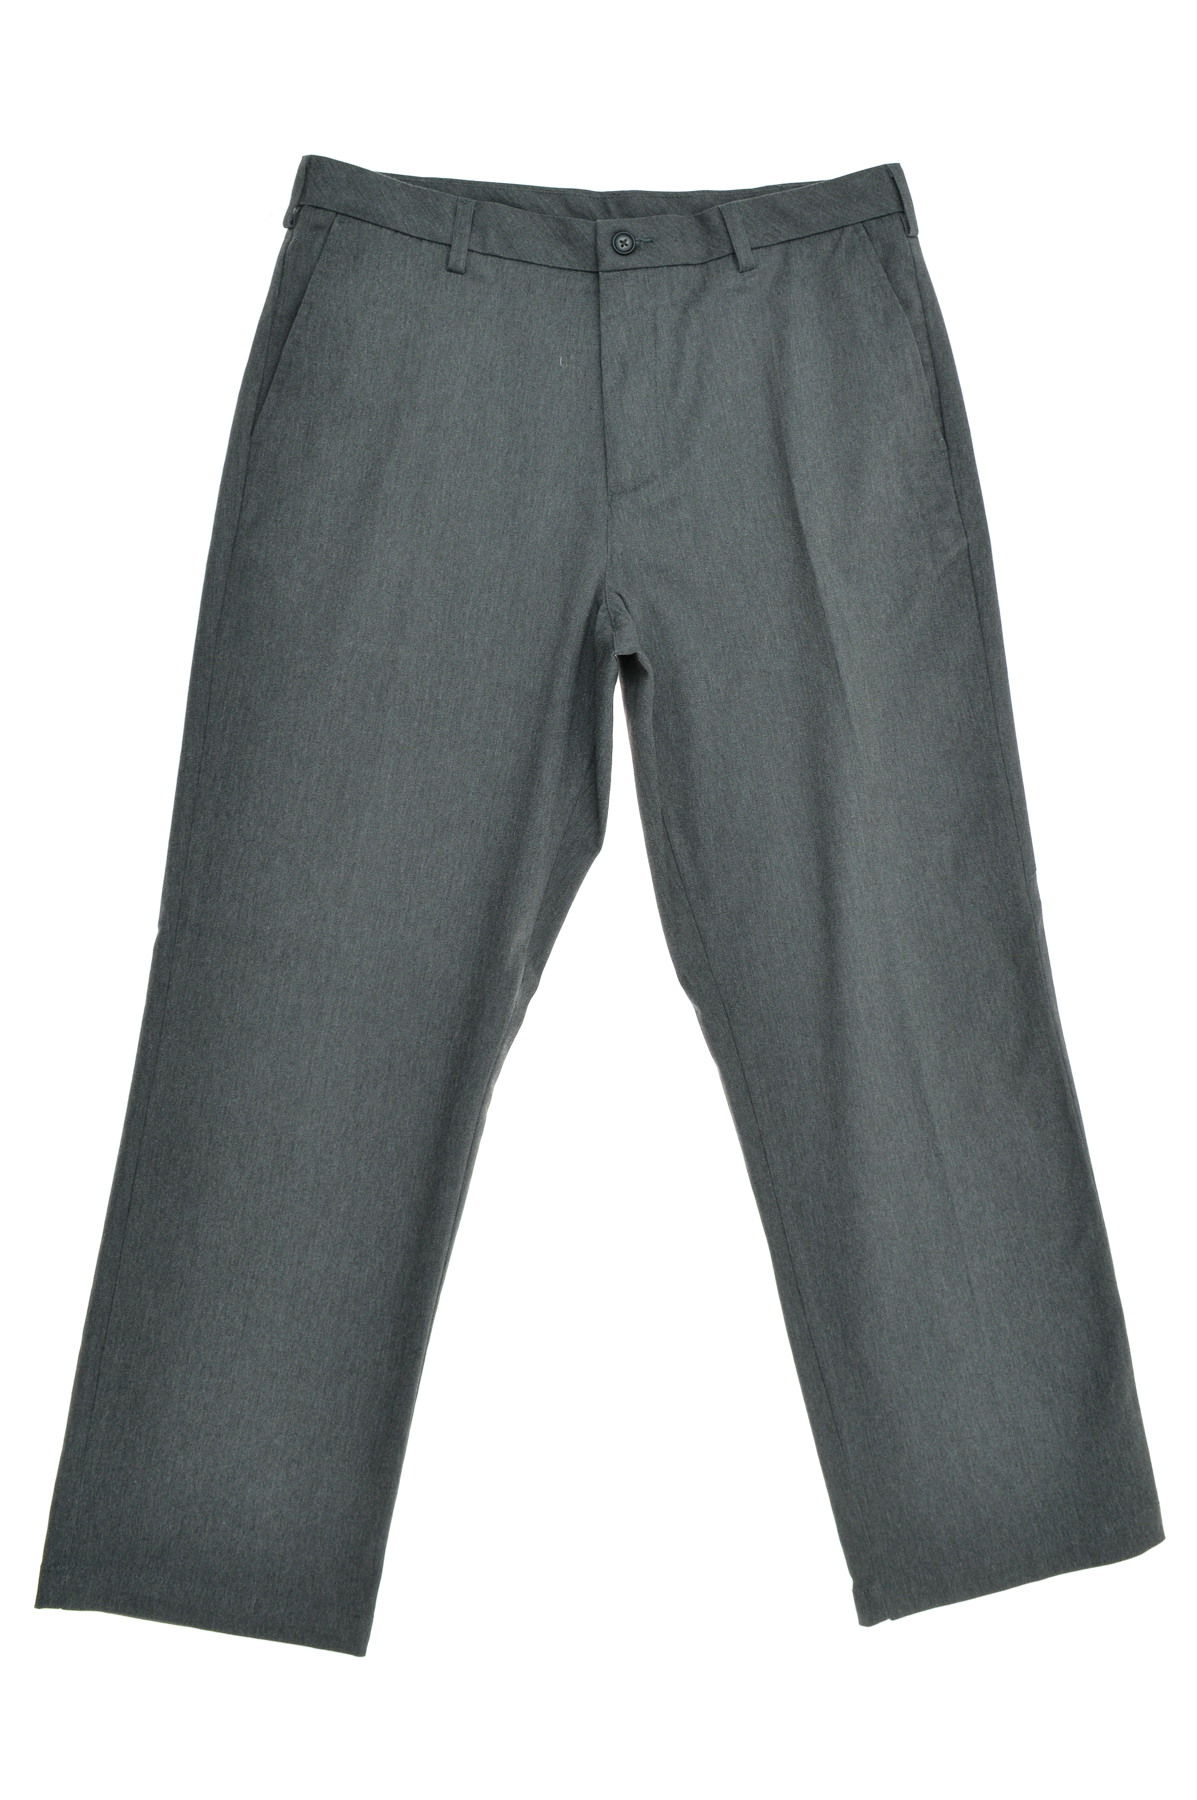 Men's trousers - Croft & Barrow - 0